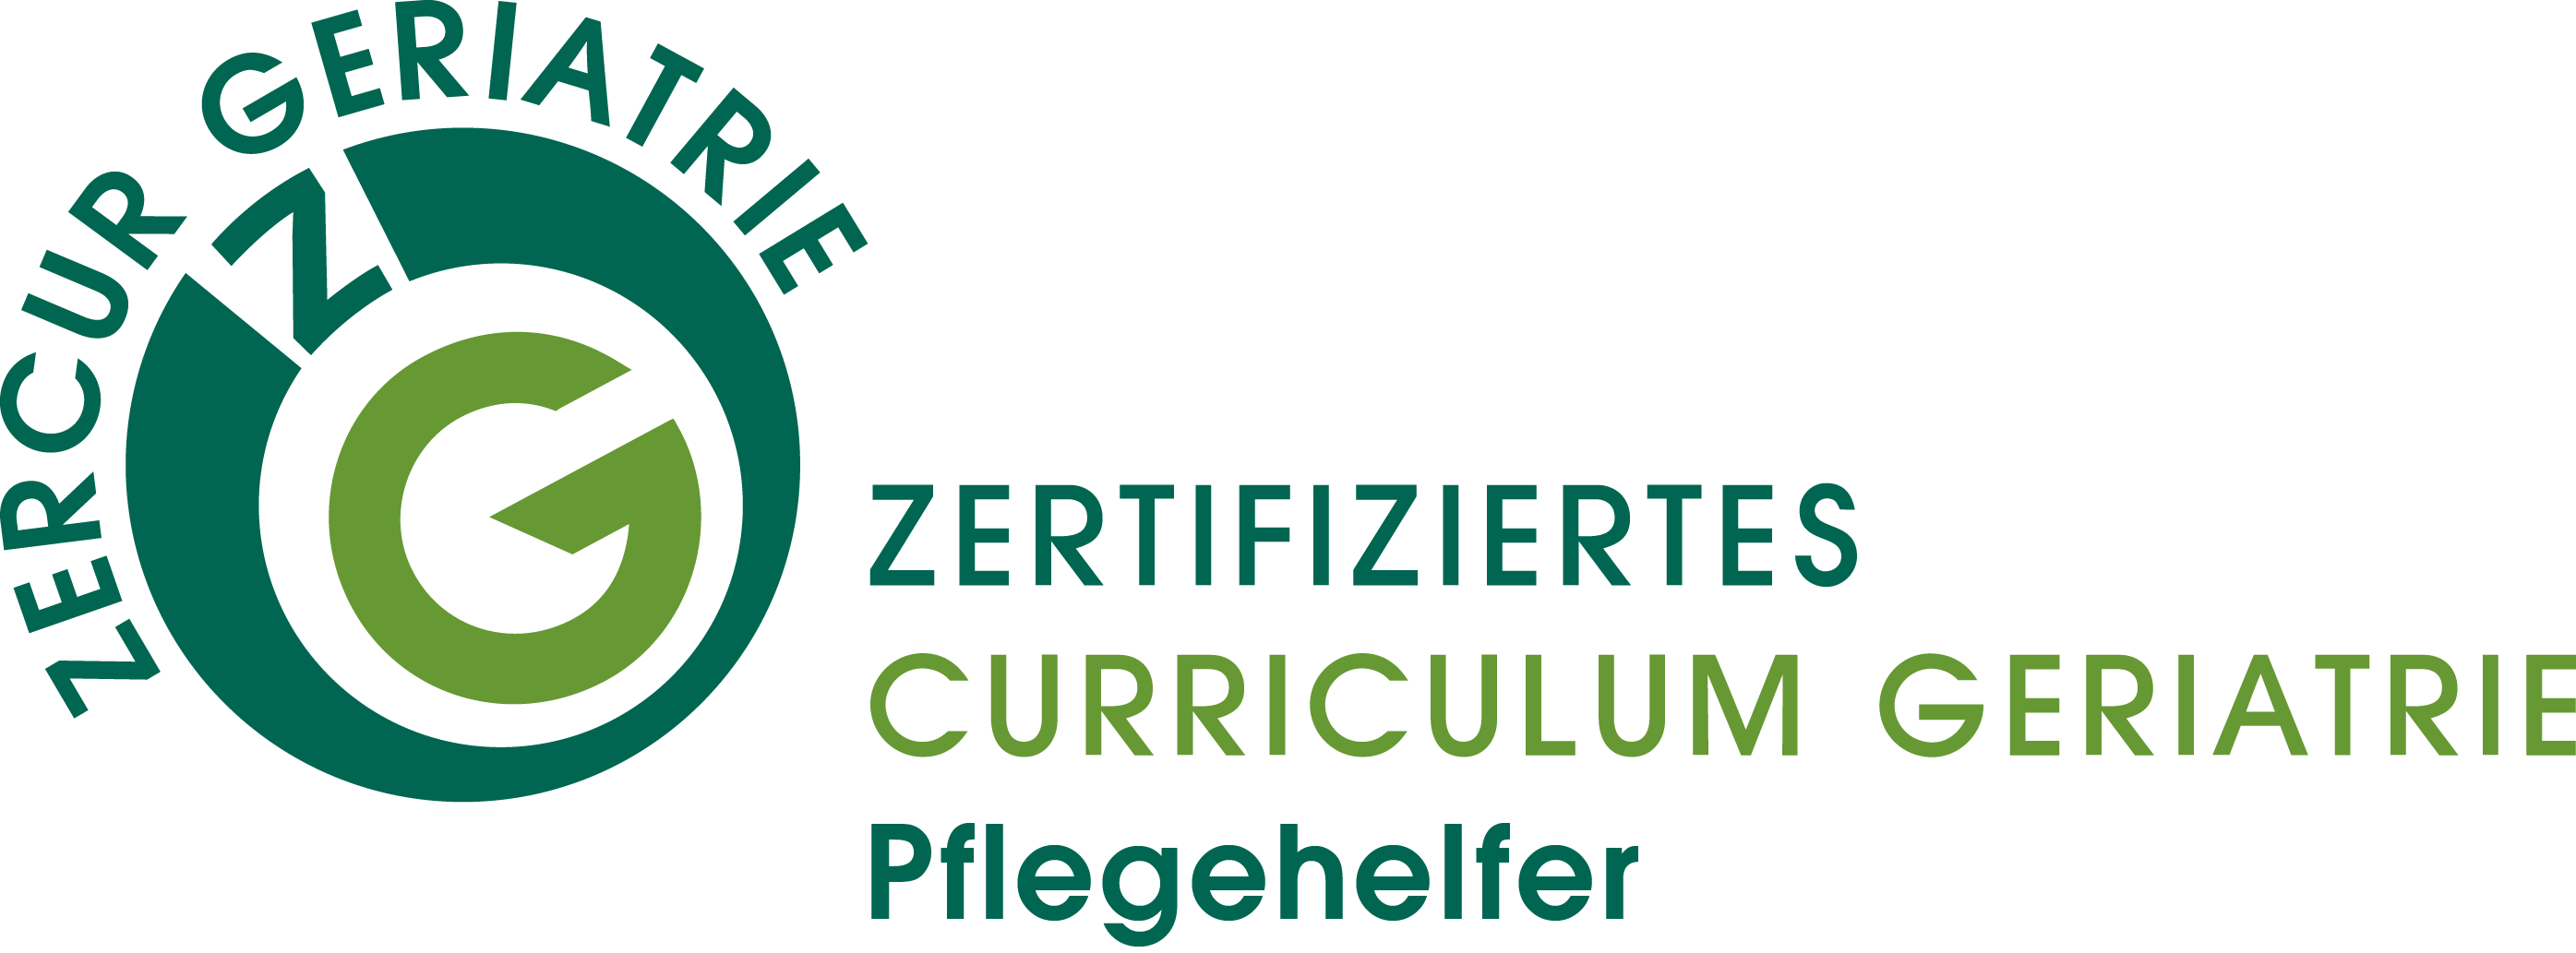 Logo Pflegehelfer